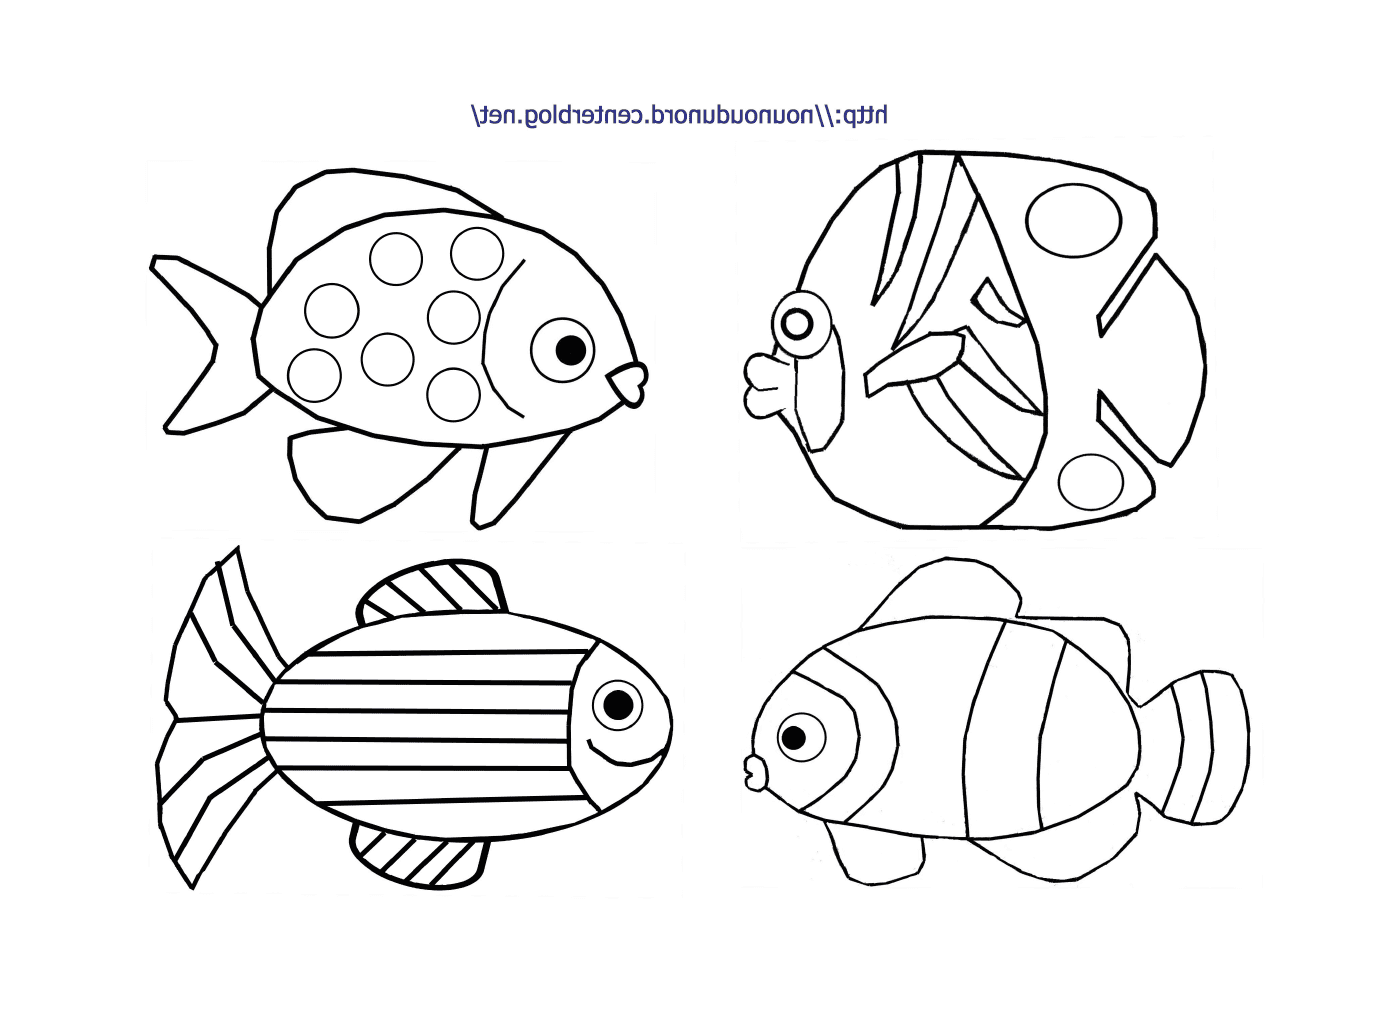  Группа четырех видов рыб 